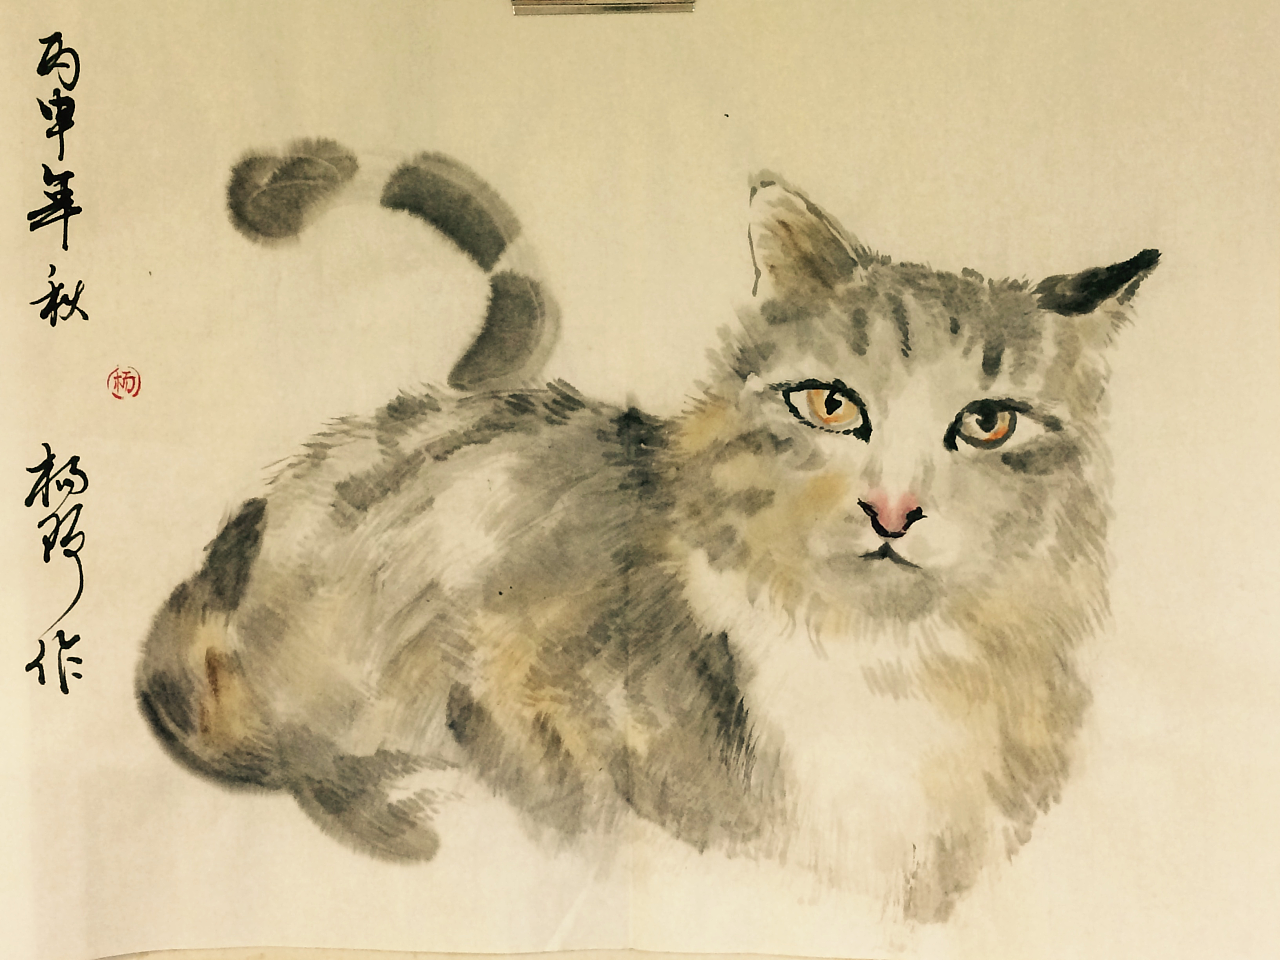 关于猫的国画写意作品,画家杨瑞对写意动物的